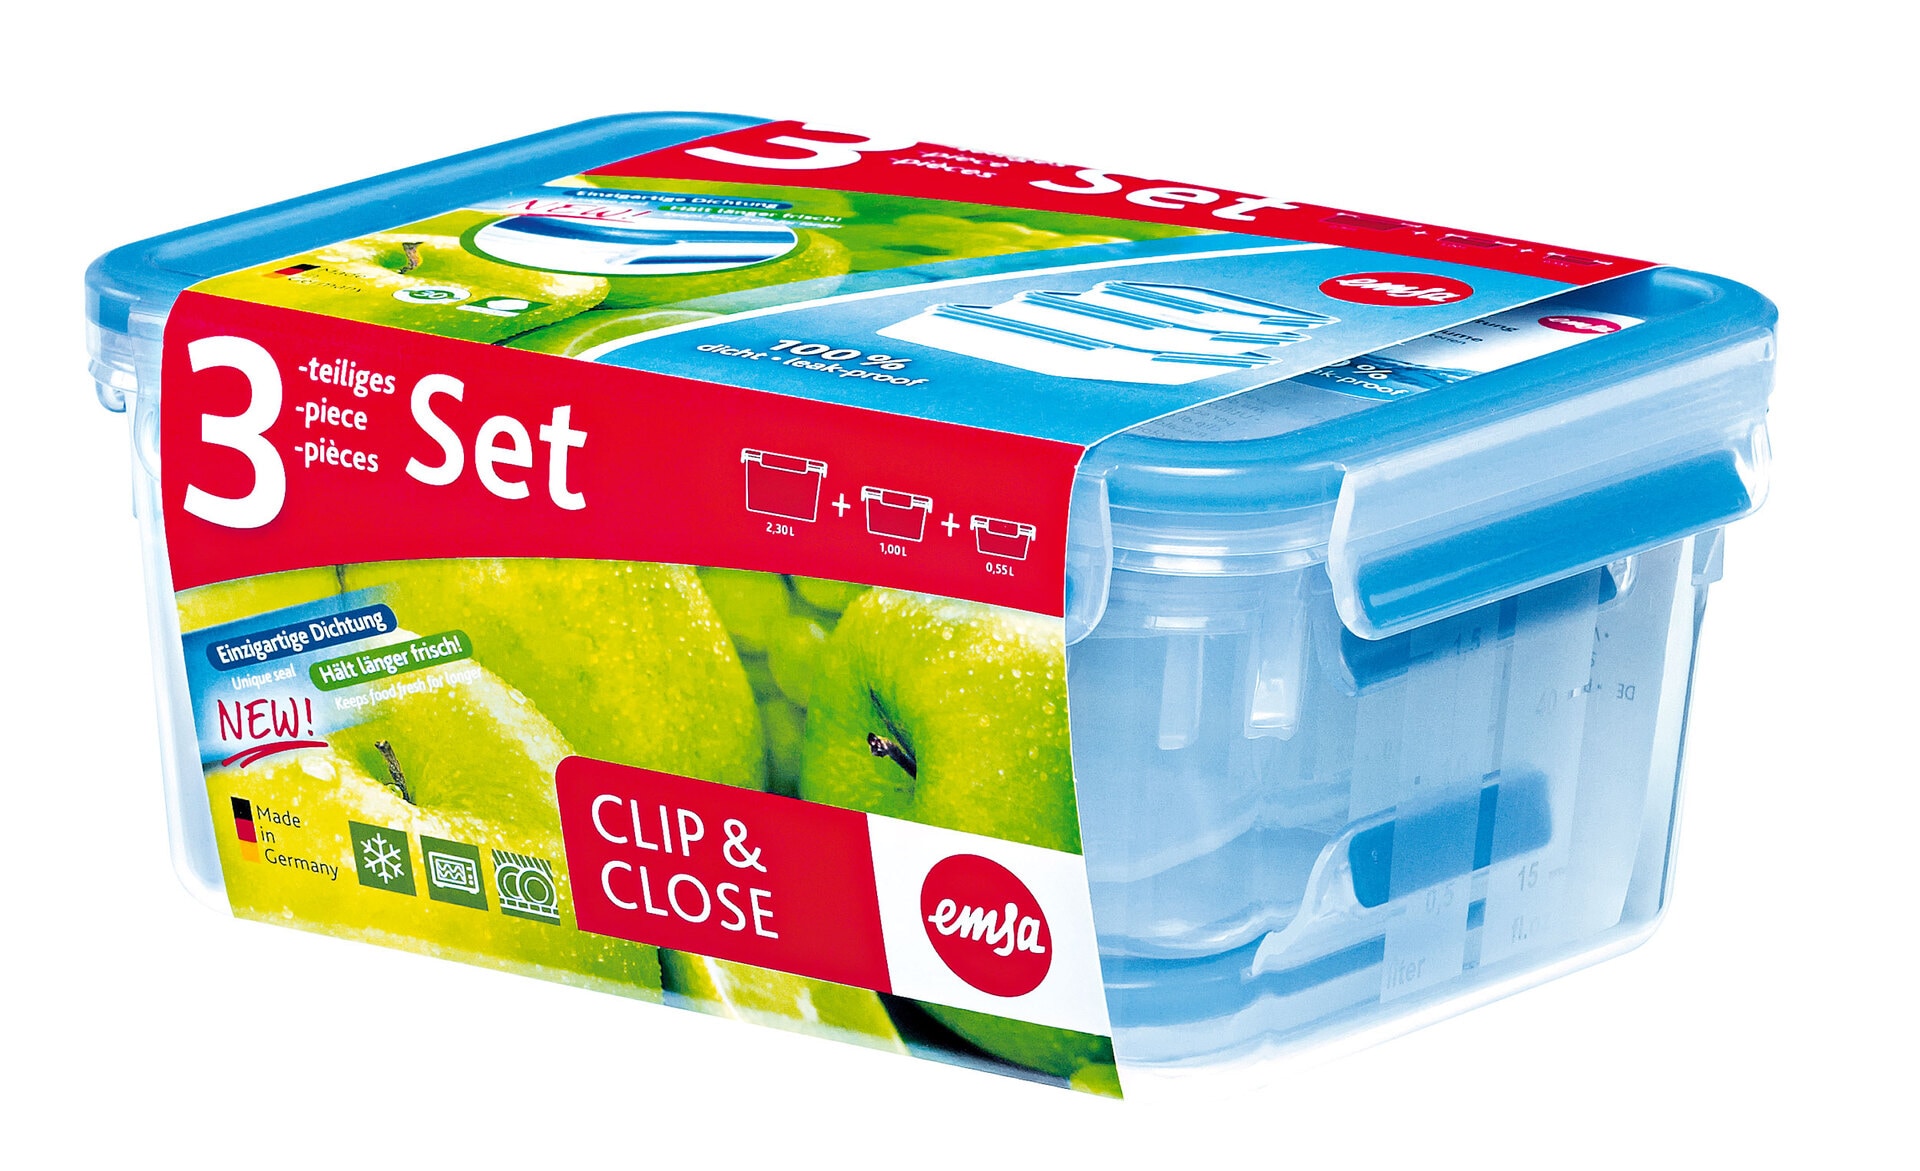 EMSA Frischhaltedosen im 3er Set CLIP & CLOSE 0,55+1,0+2,3 Liter Blau